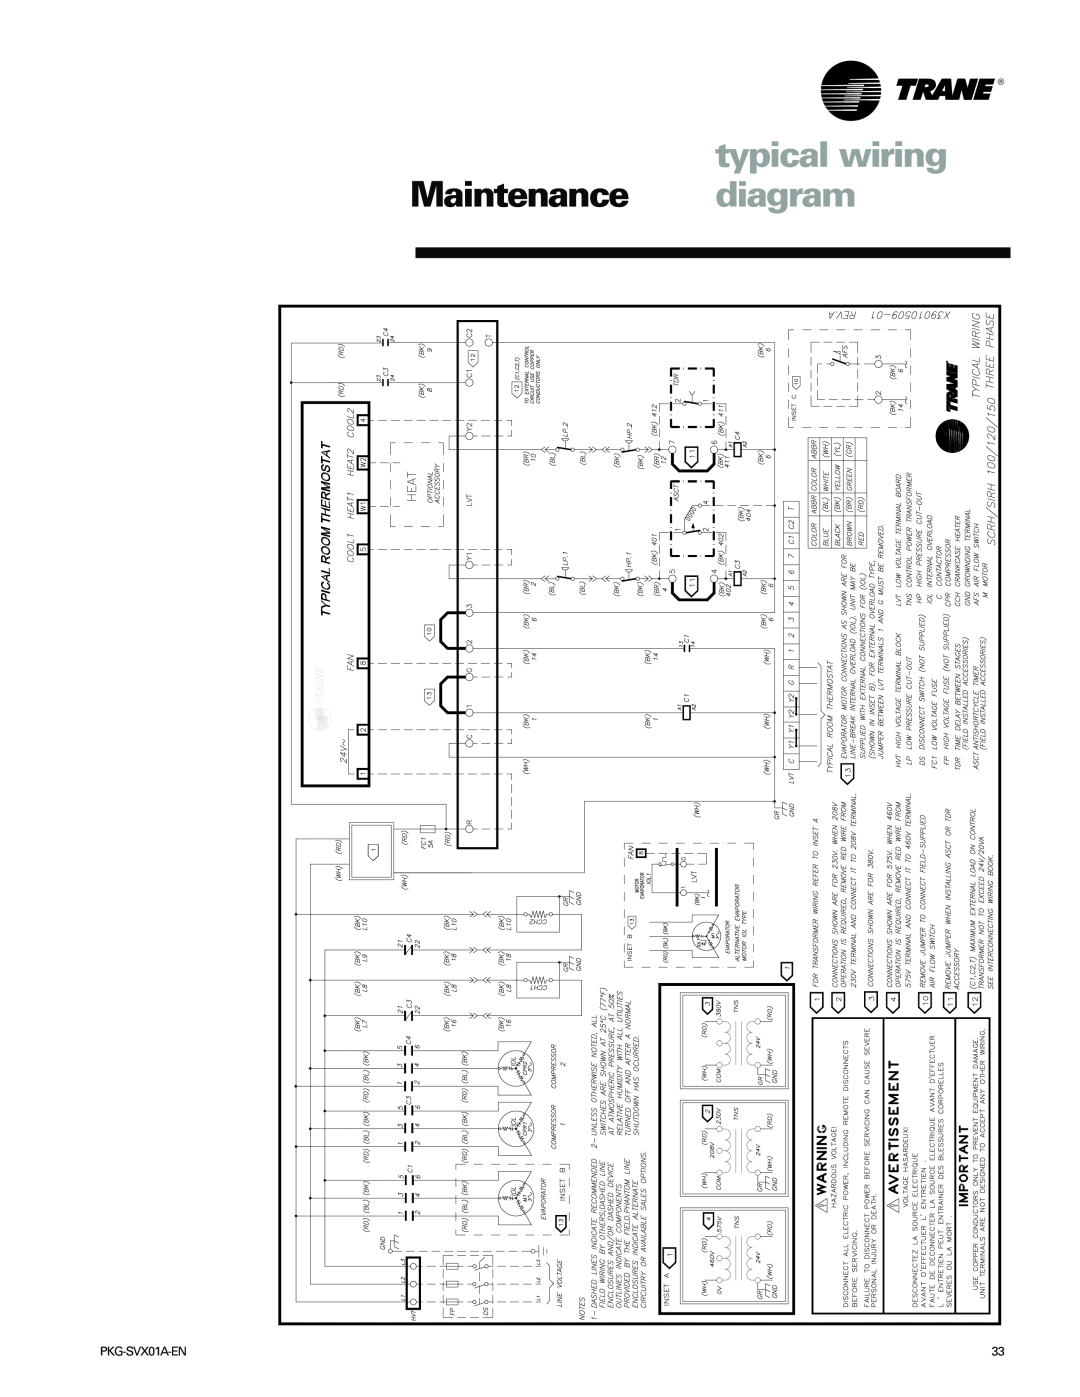 Trane SCRH, SCWH manual typical wiring, Maintenance diagram, PKG-SVX01A-EN 